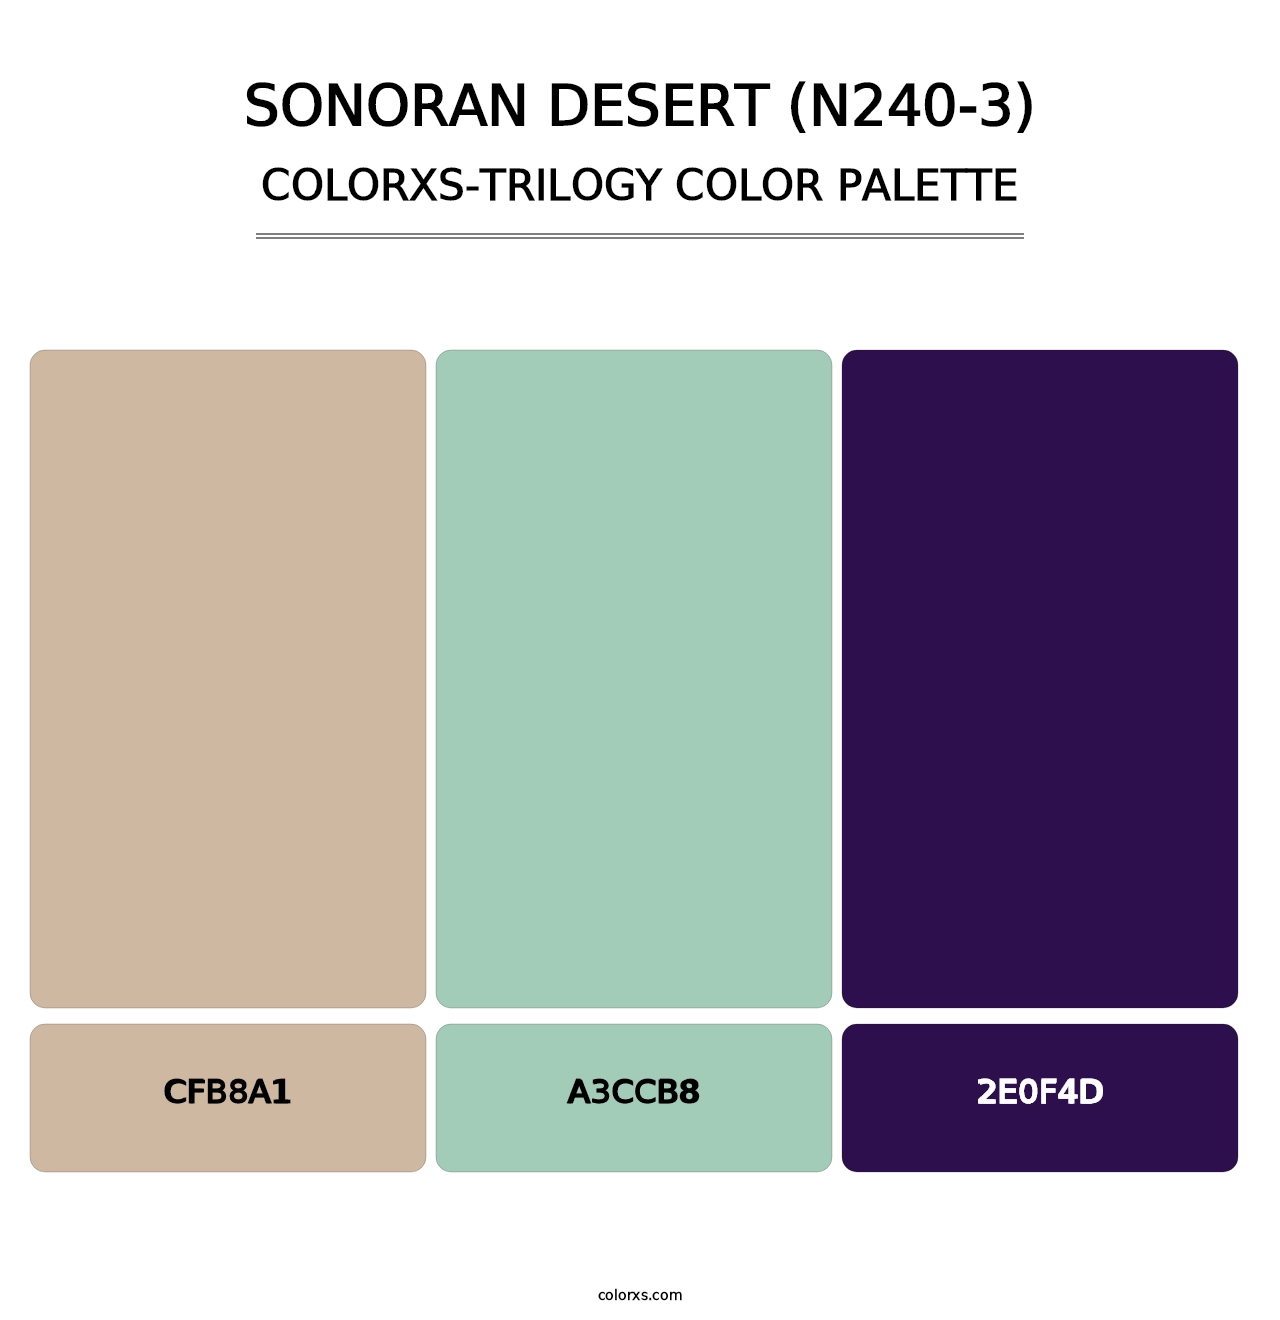 Sonoran Desert (N240-3) - Colorxs Trilogy Palette